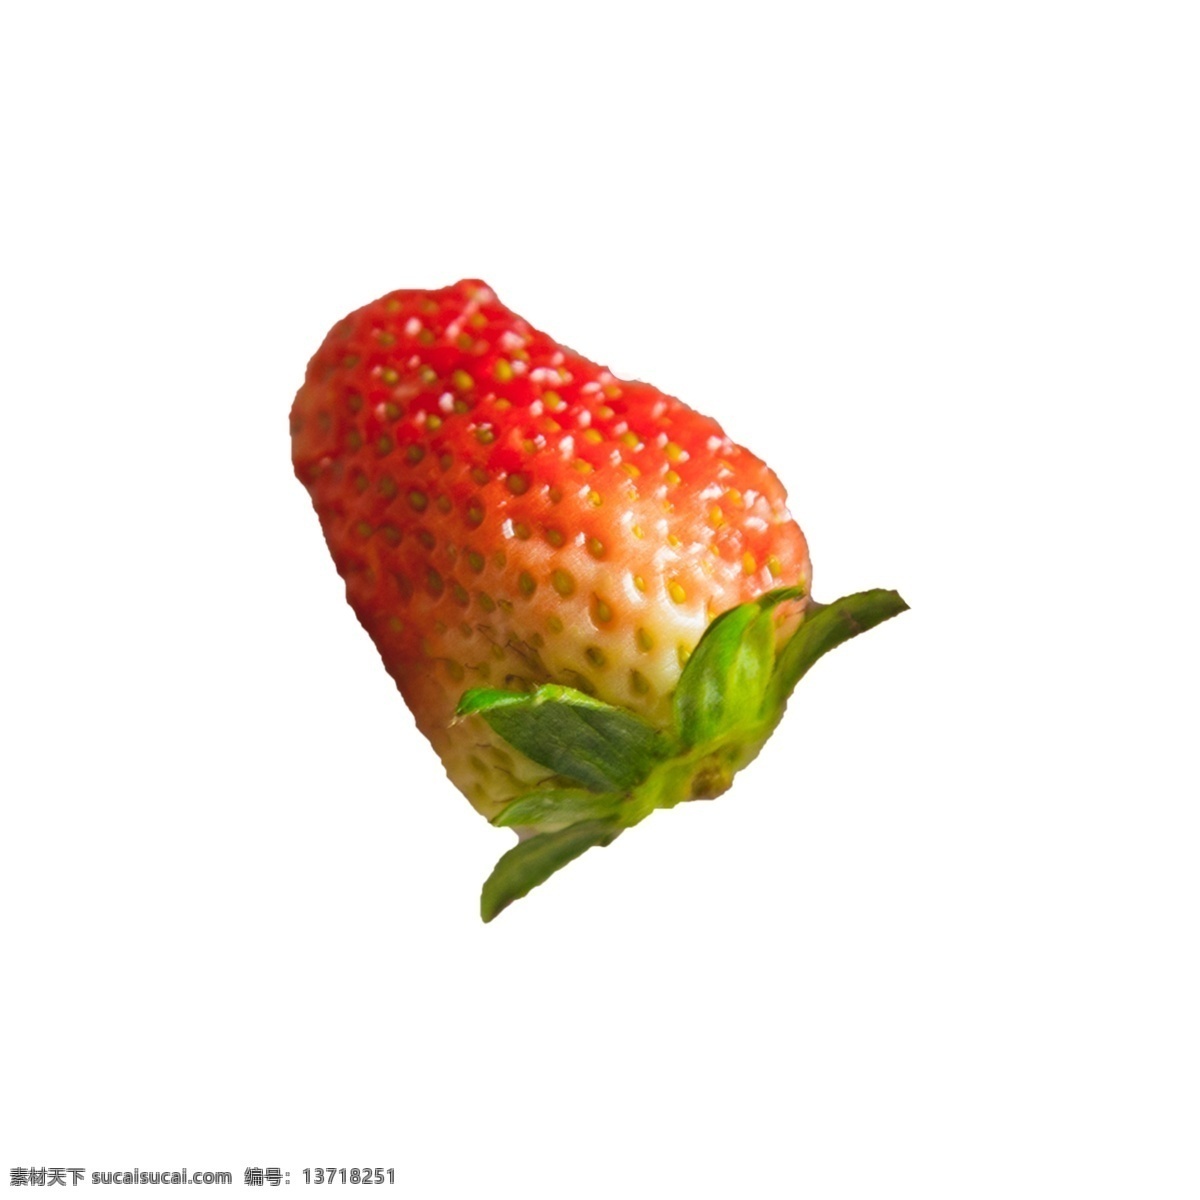 颗 草莓 实拍 免 抠 一颗草莓 水果 新鲜 实物拍摄 摆拍 奶油草莓 绿叶 植物 叶子 清甜 维生素 营养 红颜大草莓